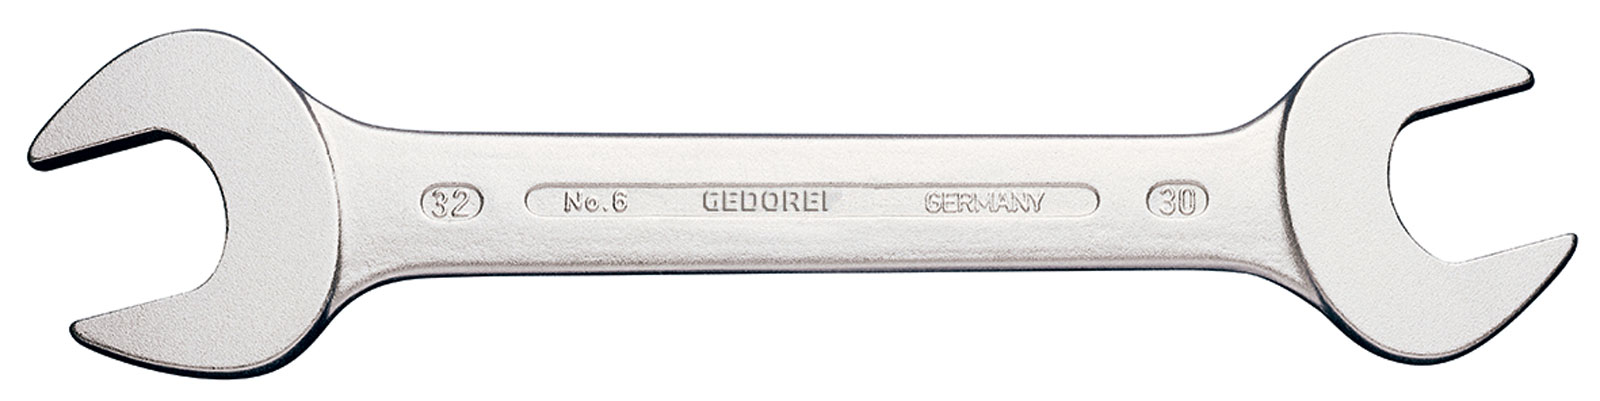 Picture of Doppelmaulschlüssel ähnlich DIN3110 9/16x5/8"Gedore